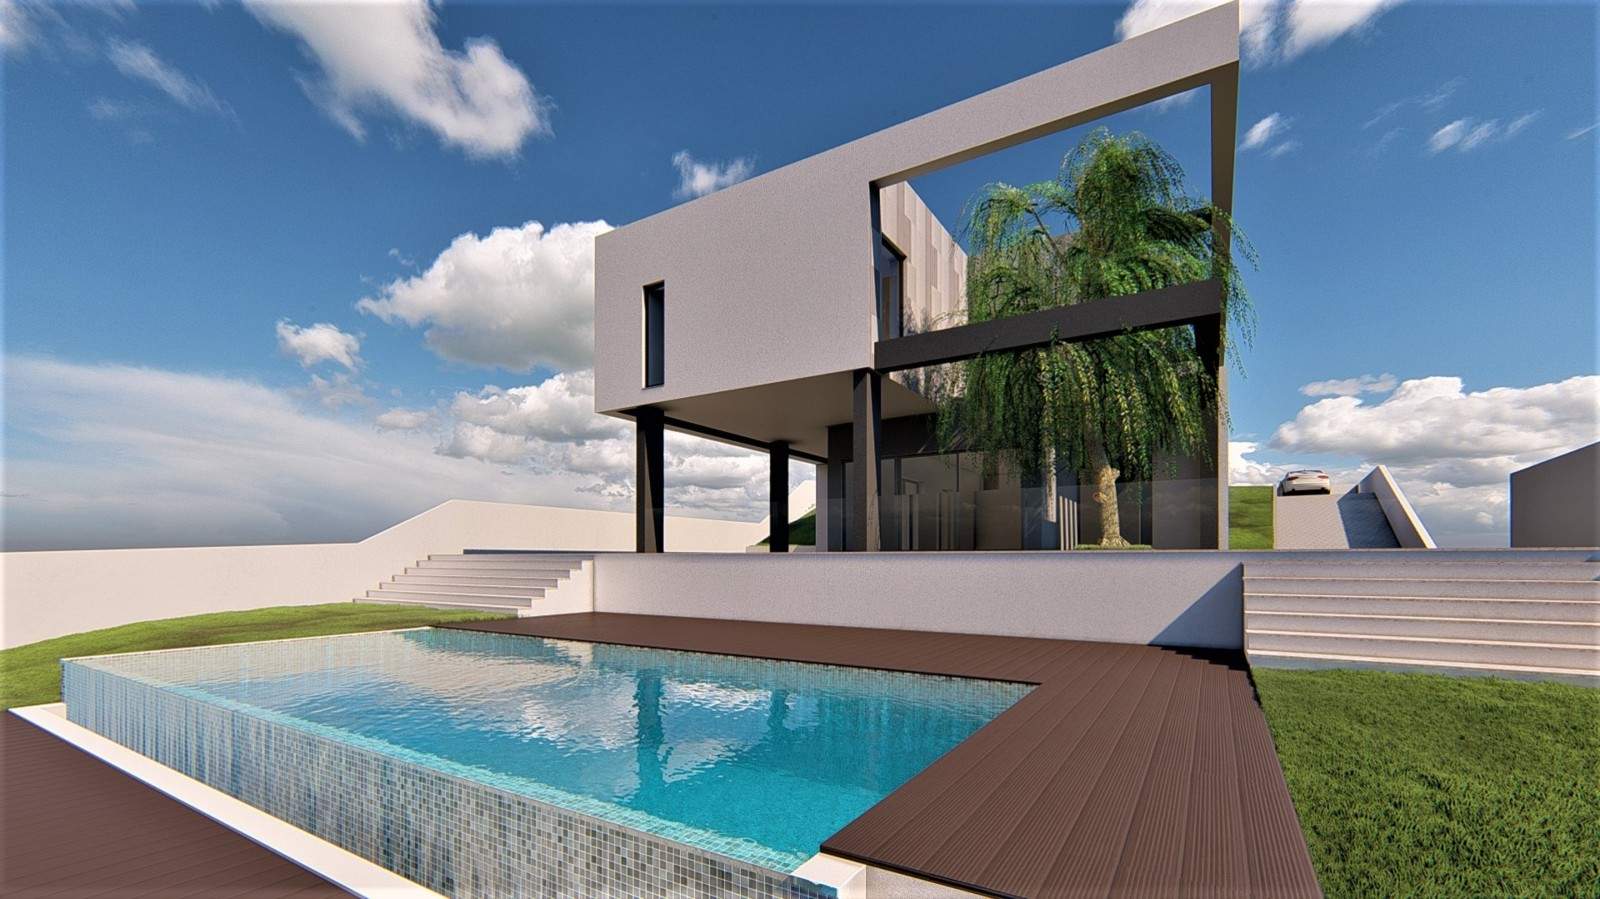 Villa de 3 dormitorios en construcción en venta, en Vilamoura, Algarve_213449